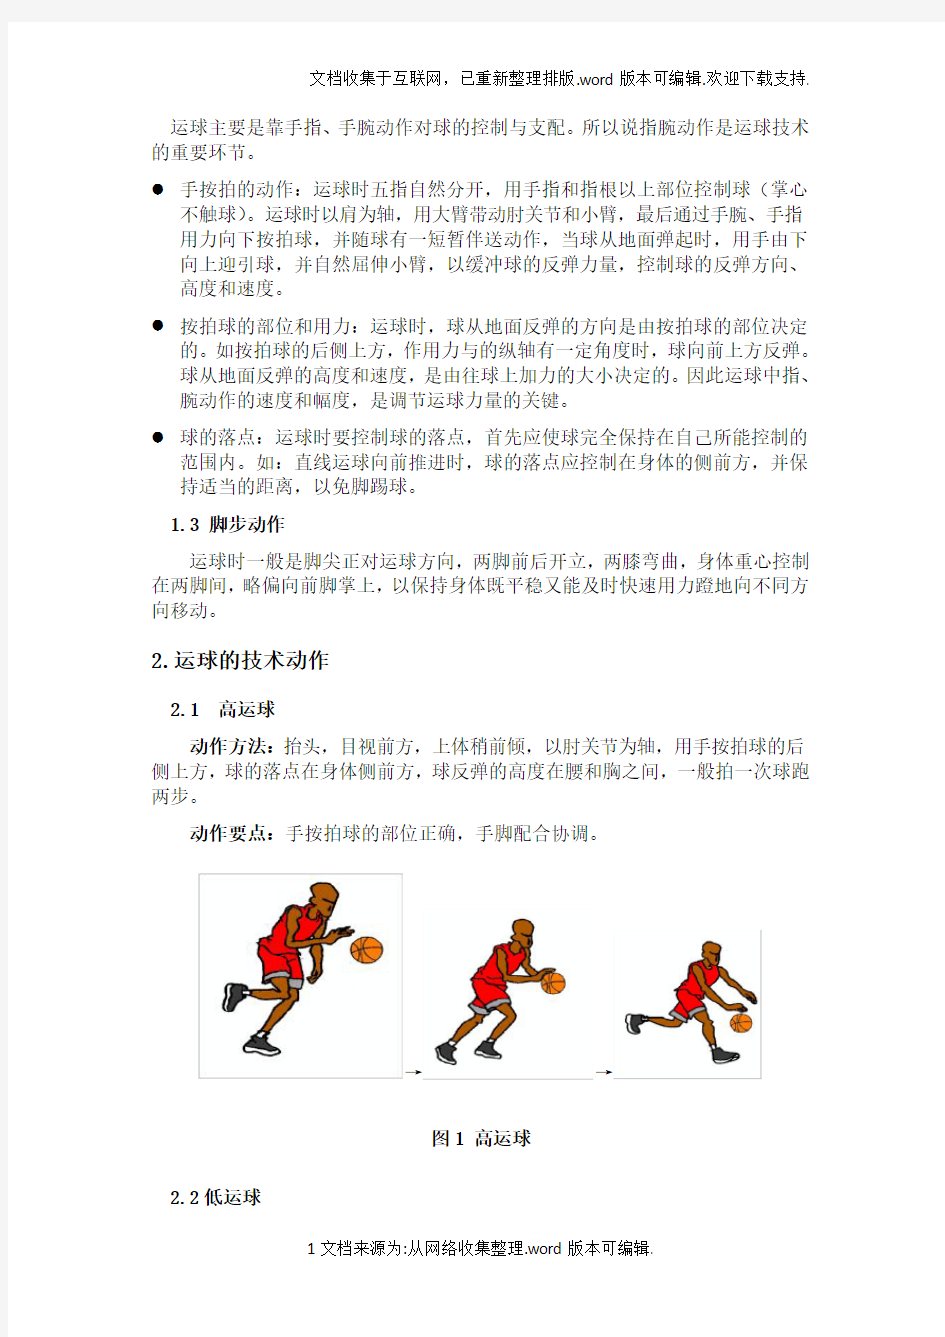 中考体育篮球运球考试规则及练习方法(附场地图)